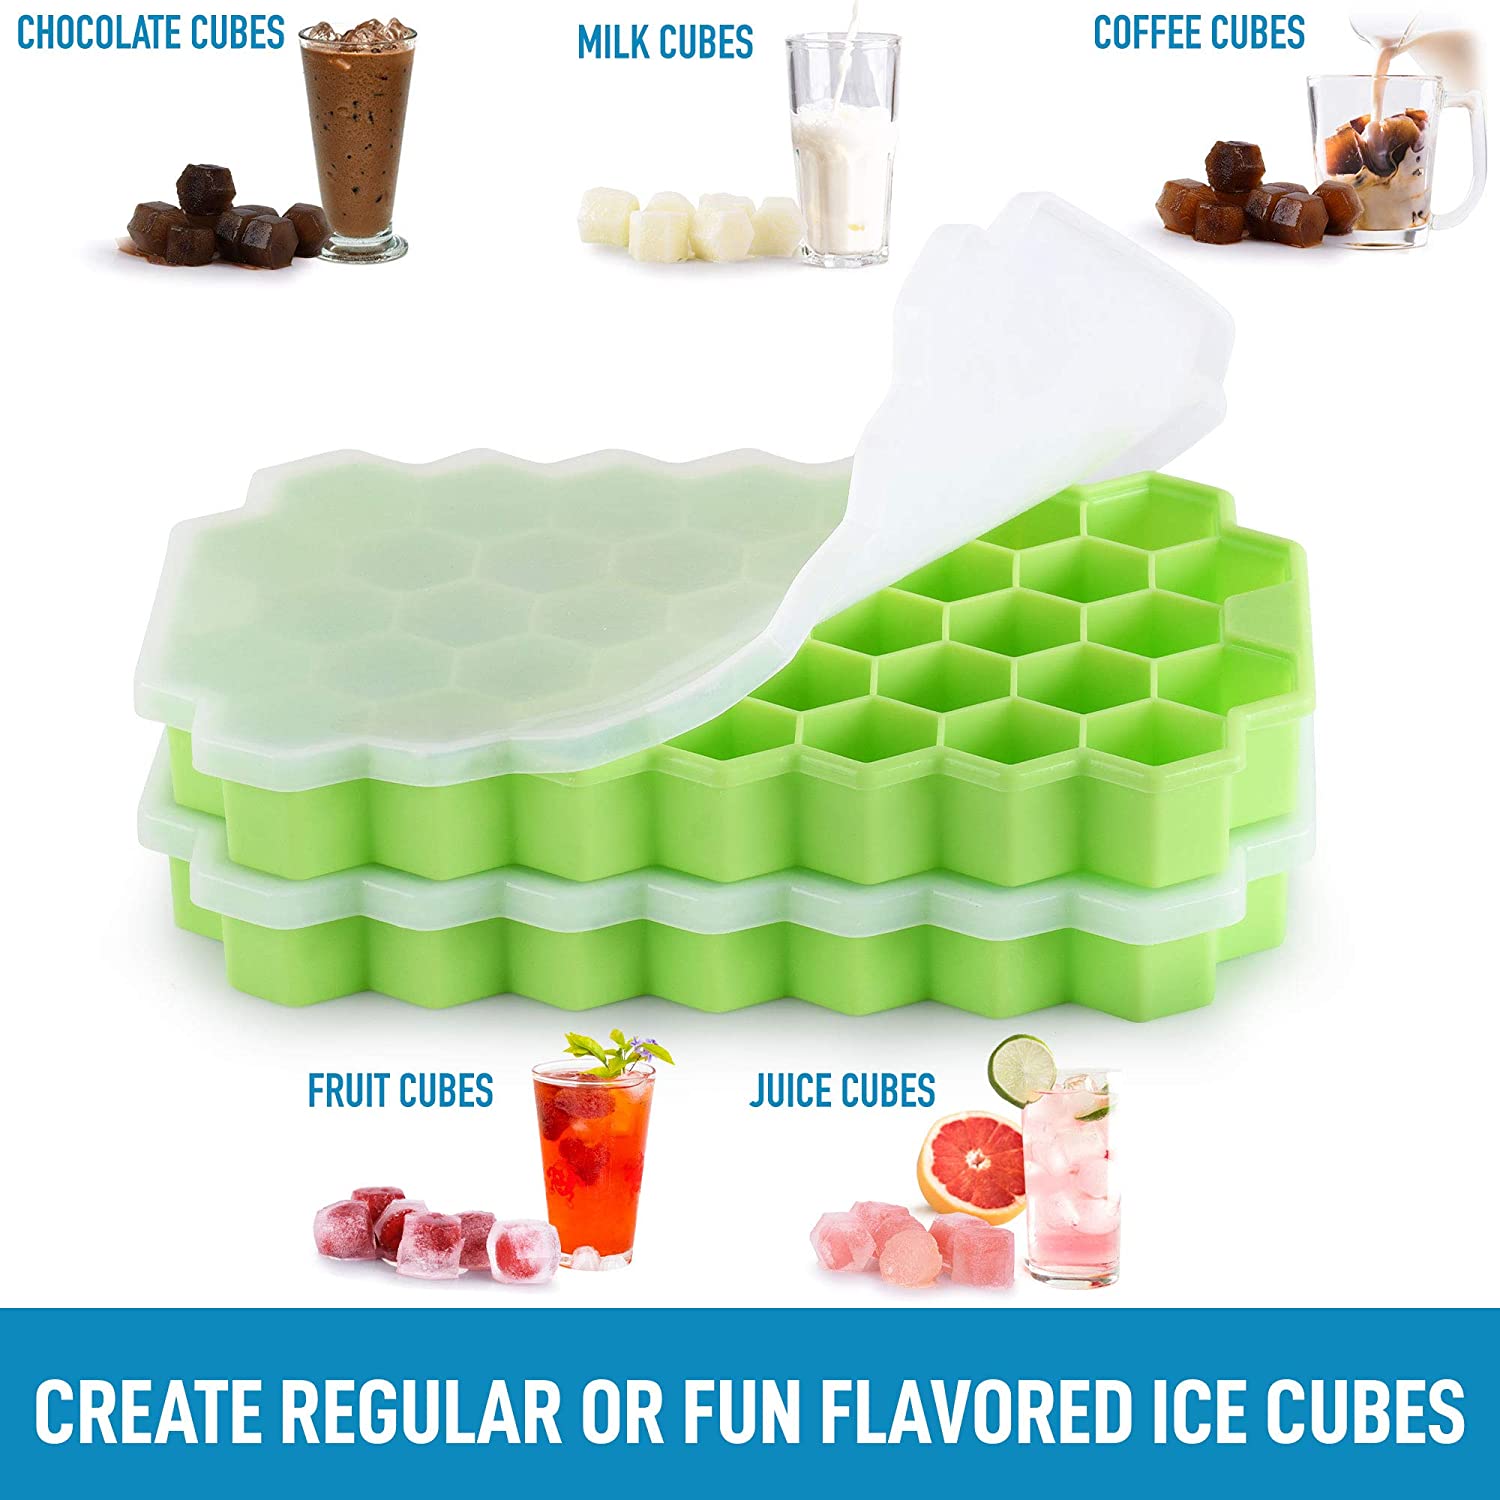 Honeycomb Shaped Silicone Ice Cube Tray Set - Zulay KitchenZulay Kitchen